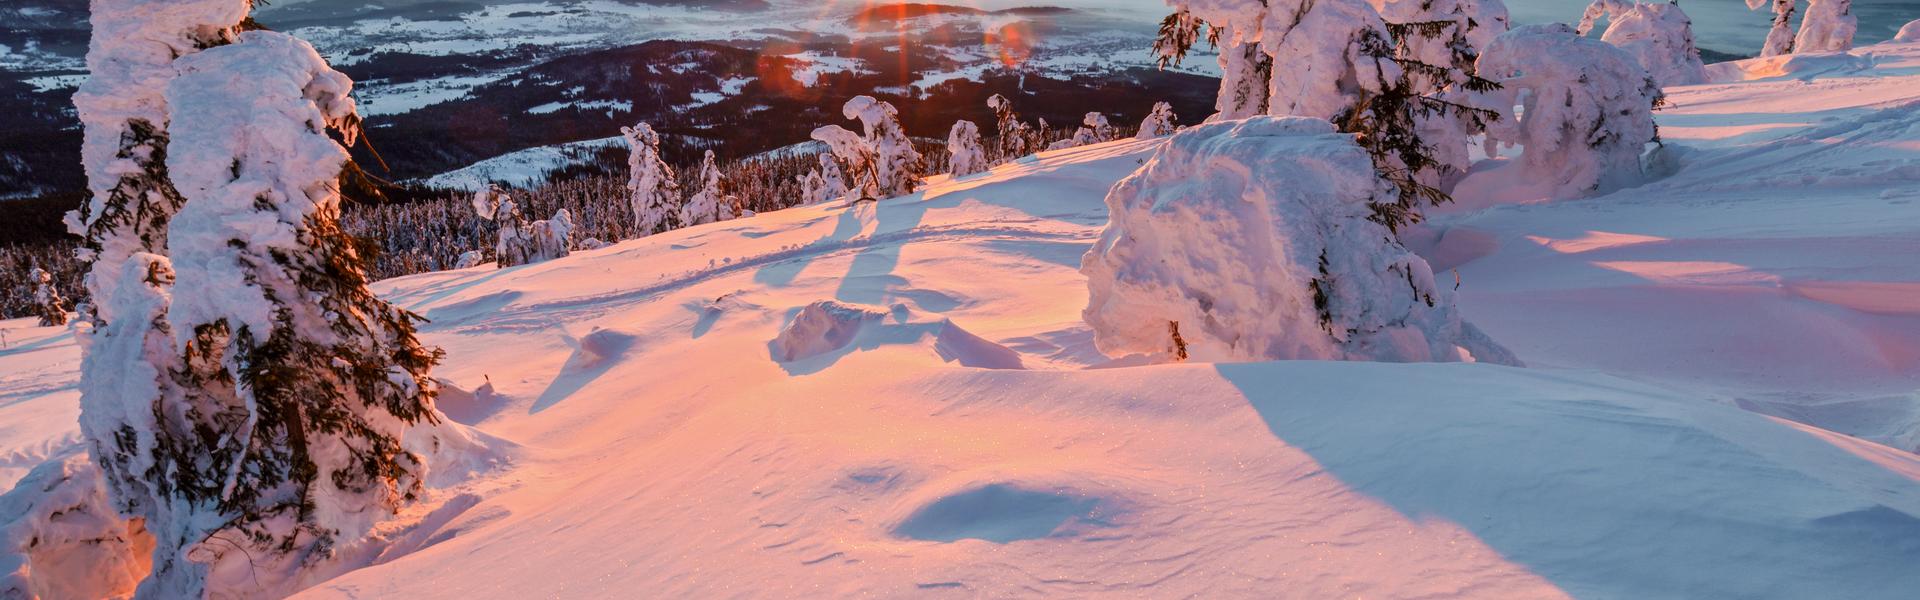 Image: Zimowe wędrówki po górach? 3 pomysły na wycieczki, które Was zauroczą!